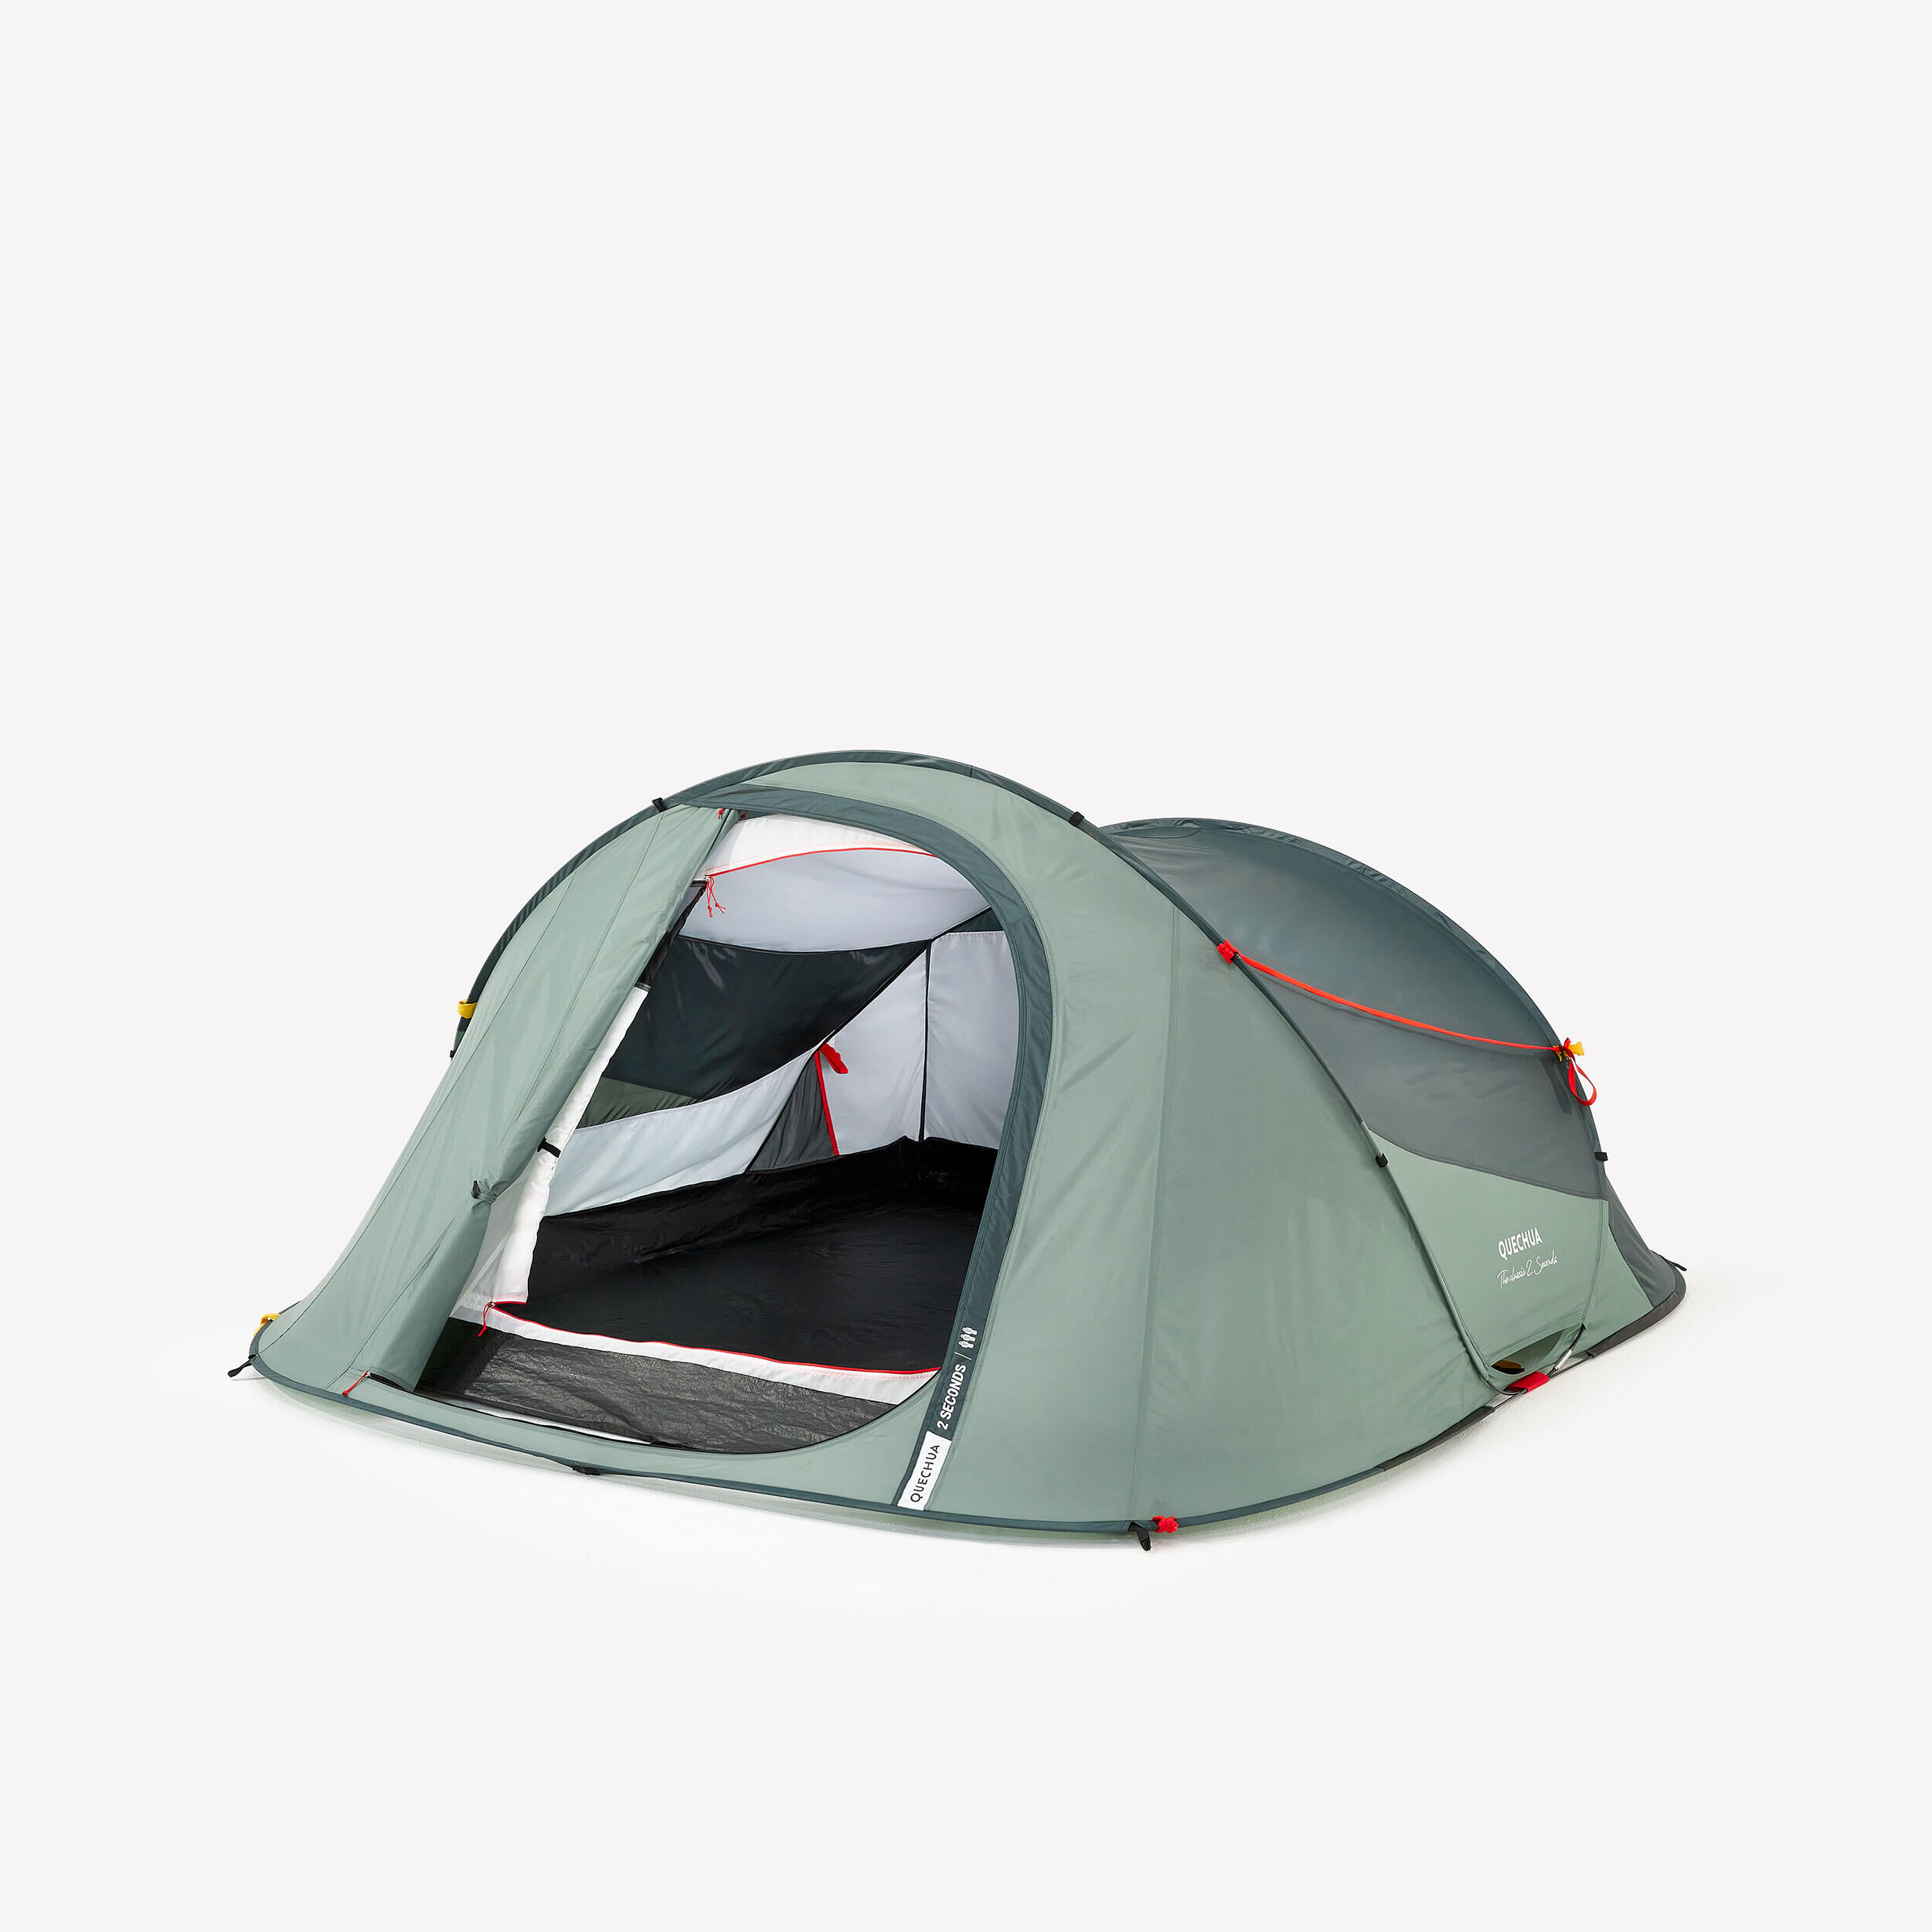 QUECHUA Camping tent - 2 SECONDS - 3-person